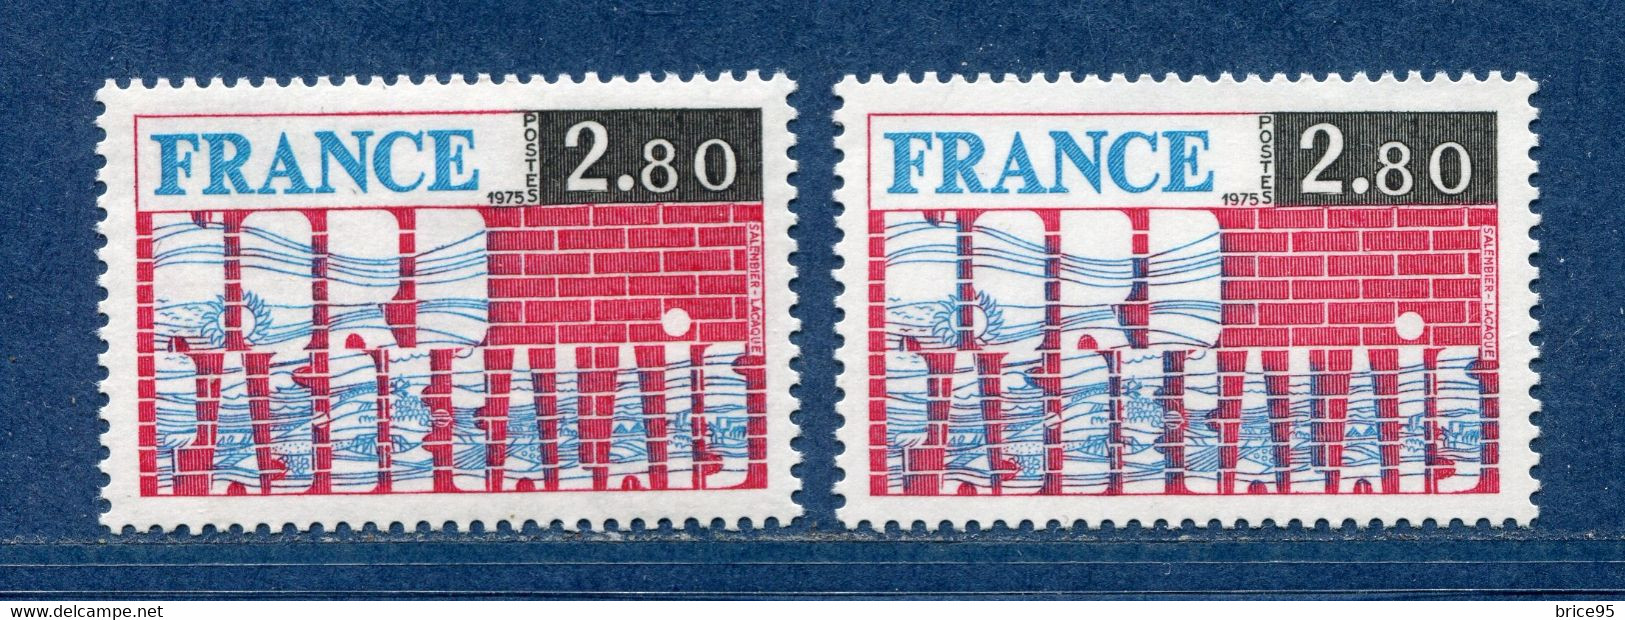 ⭐ France - Variété - YT N° 1852 - Couleurs - Pétouille - Neuf Sans Charnière - 1975 ⭐ - Neufs